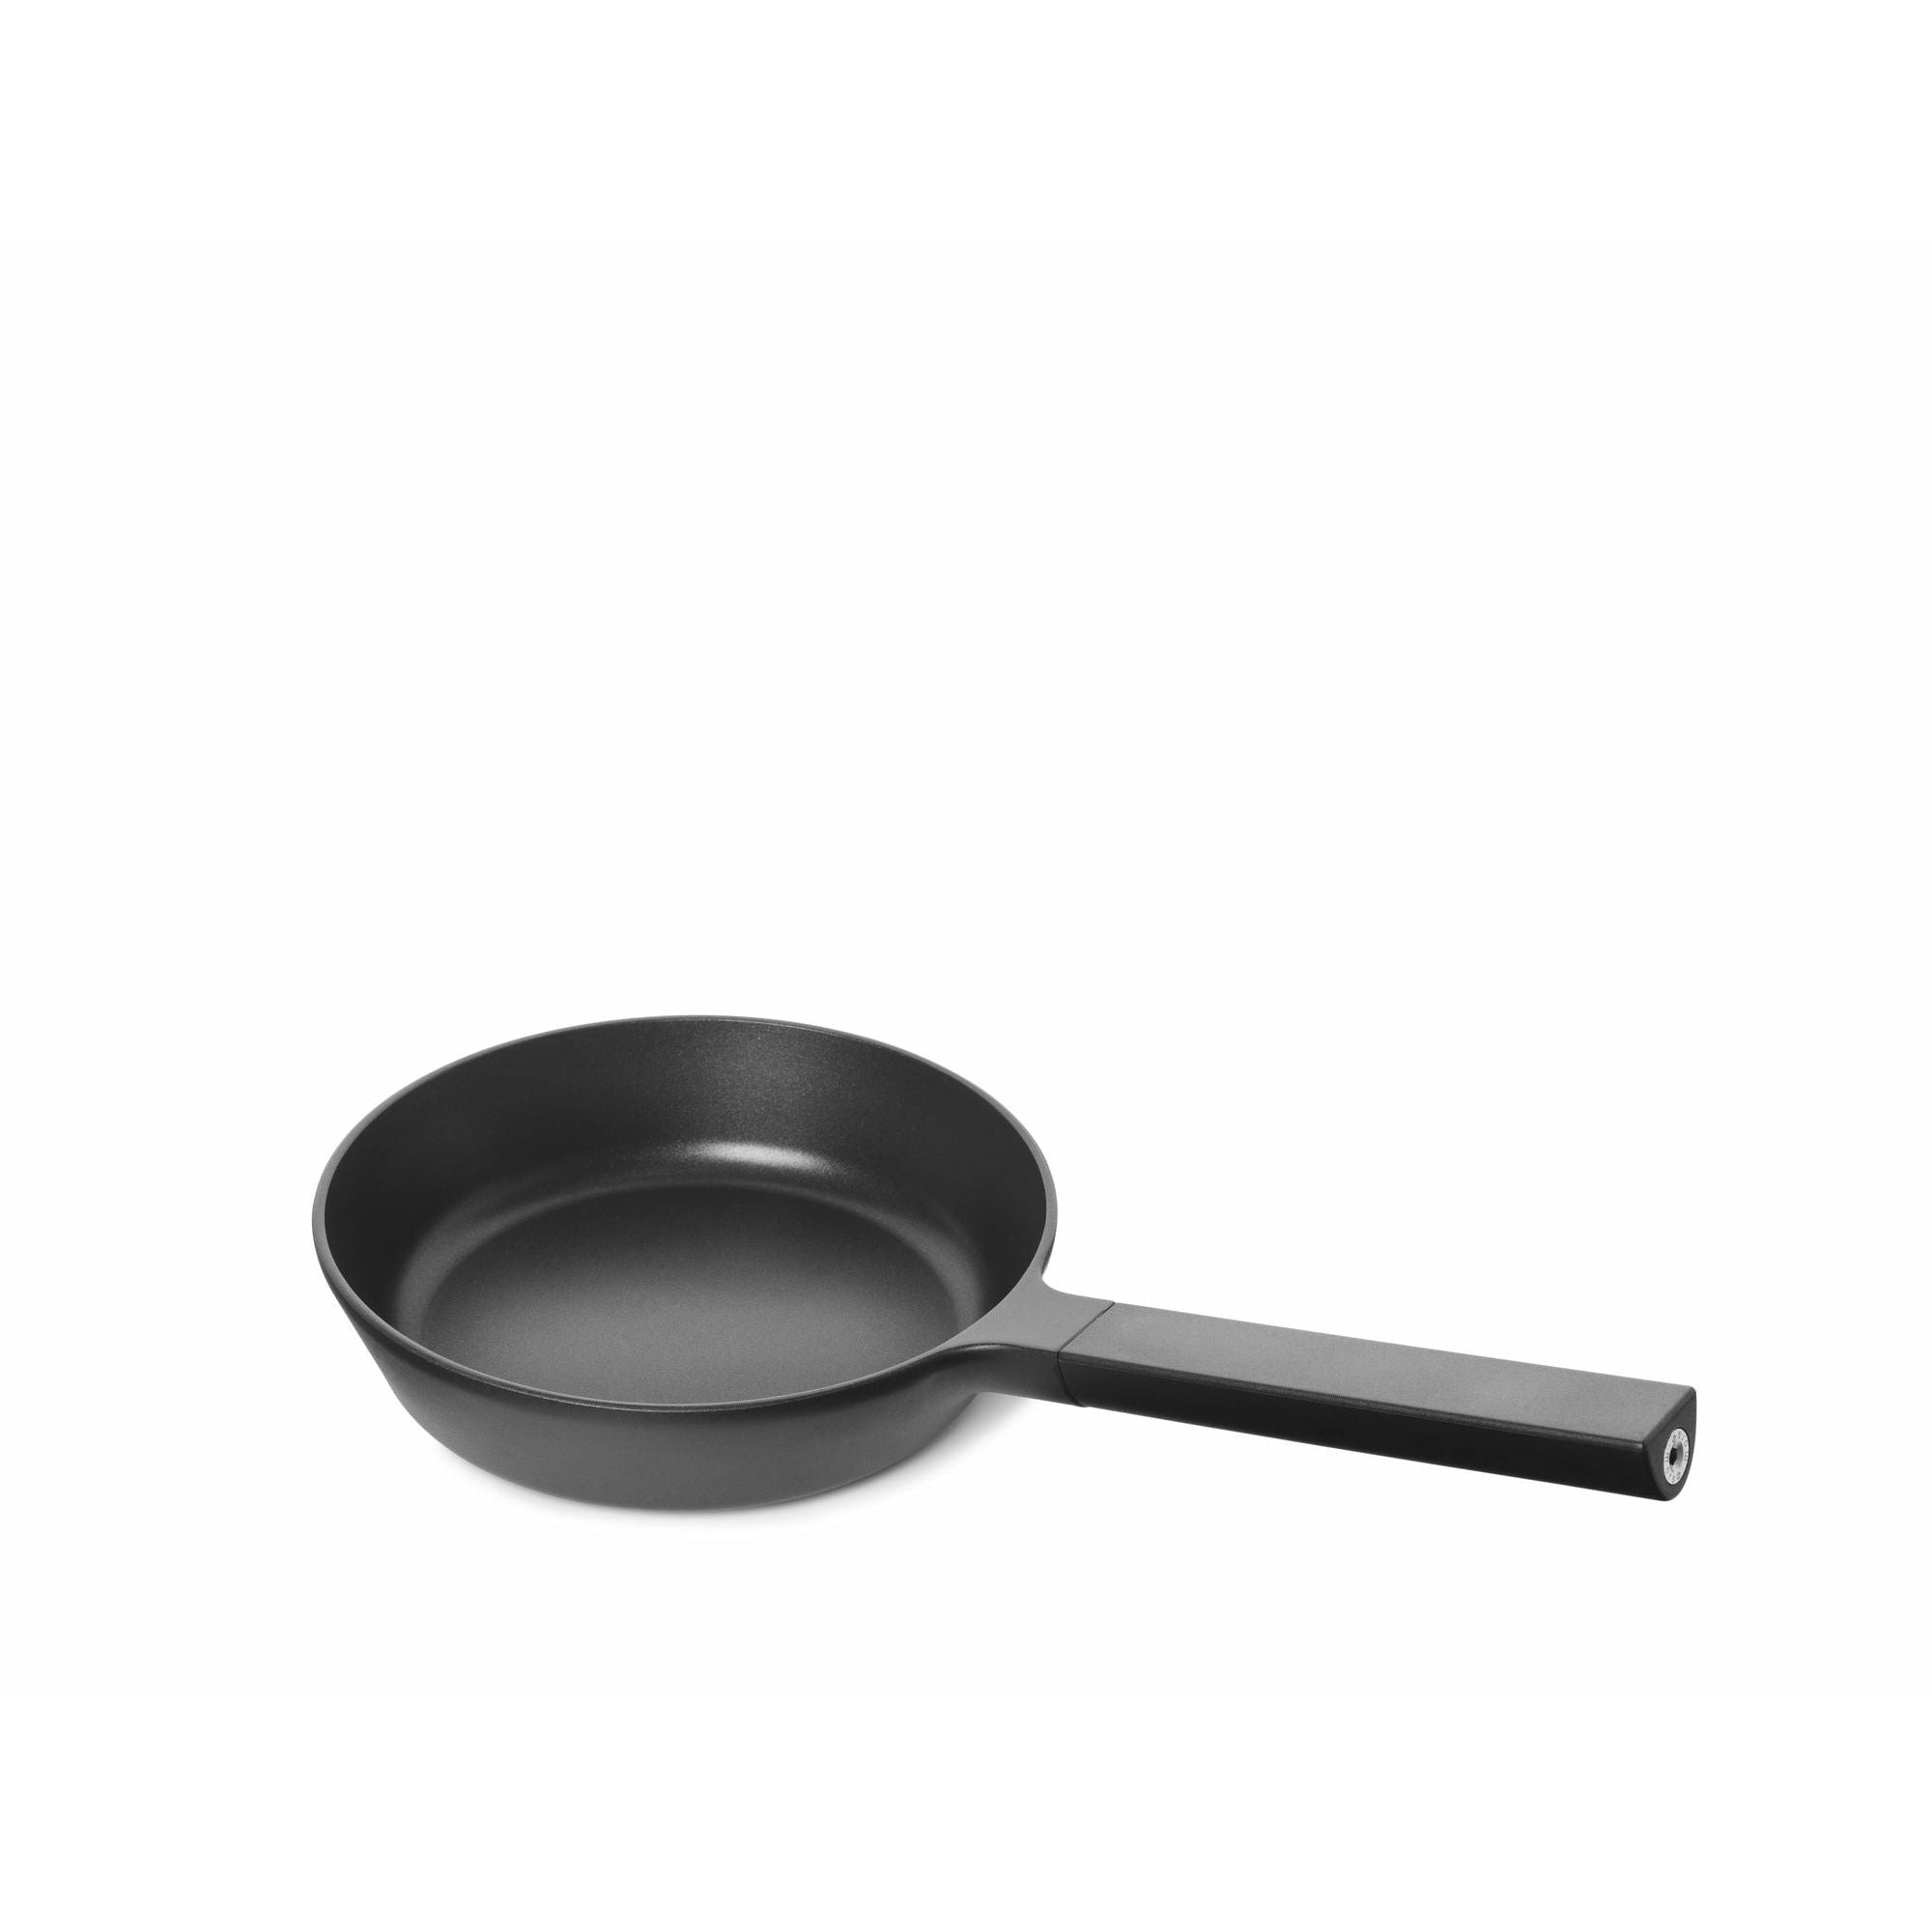 Morsø Pan à frire Alu, 20 cm